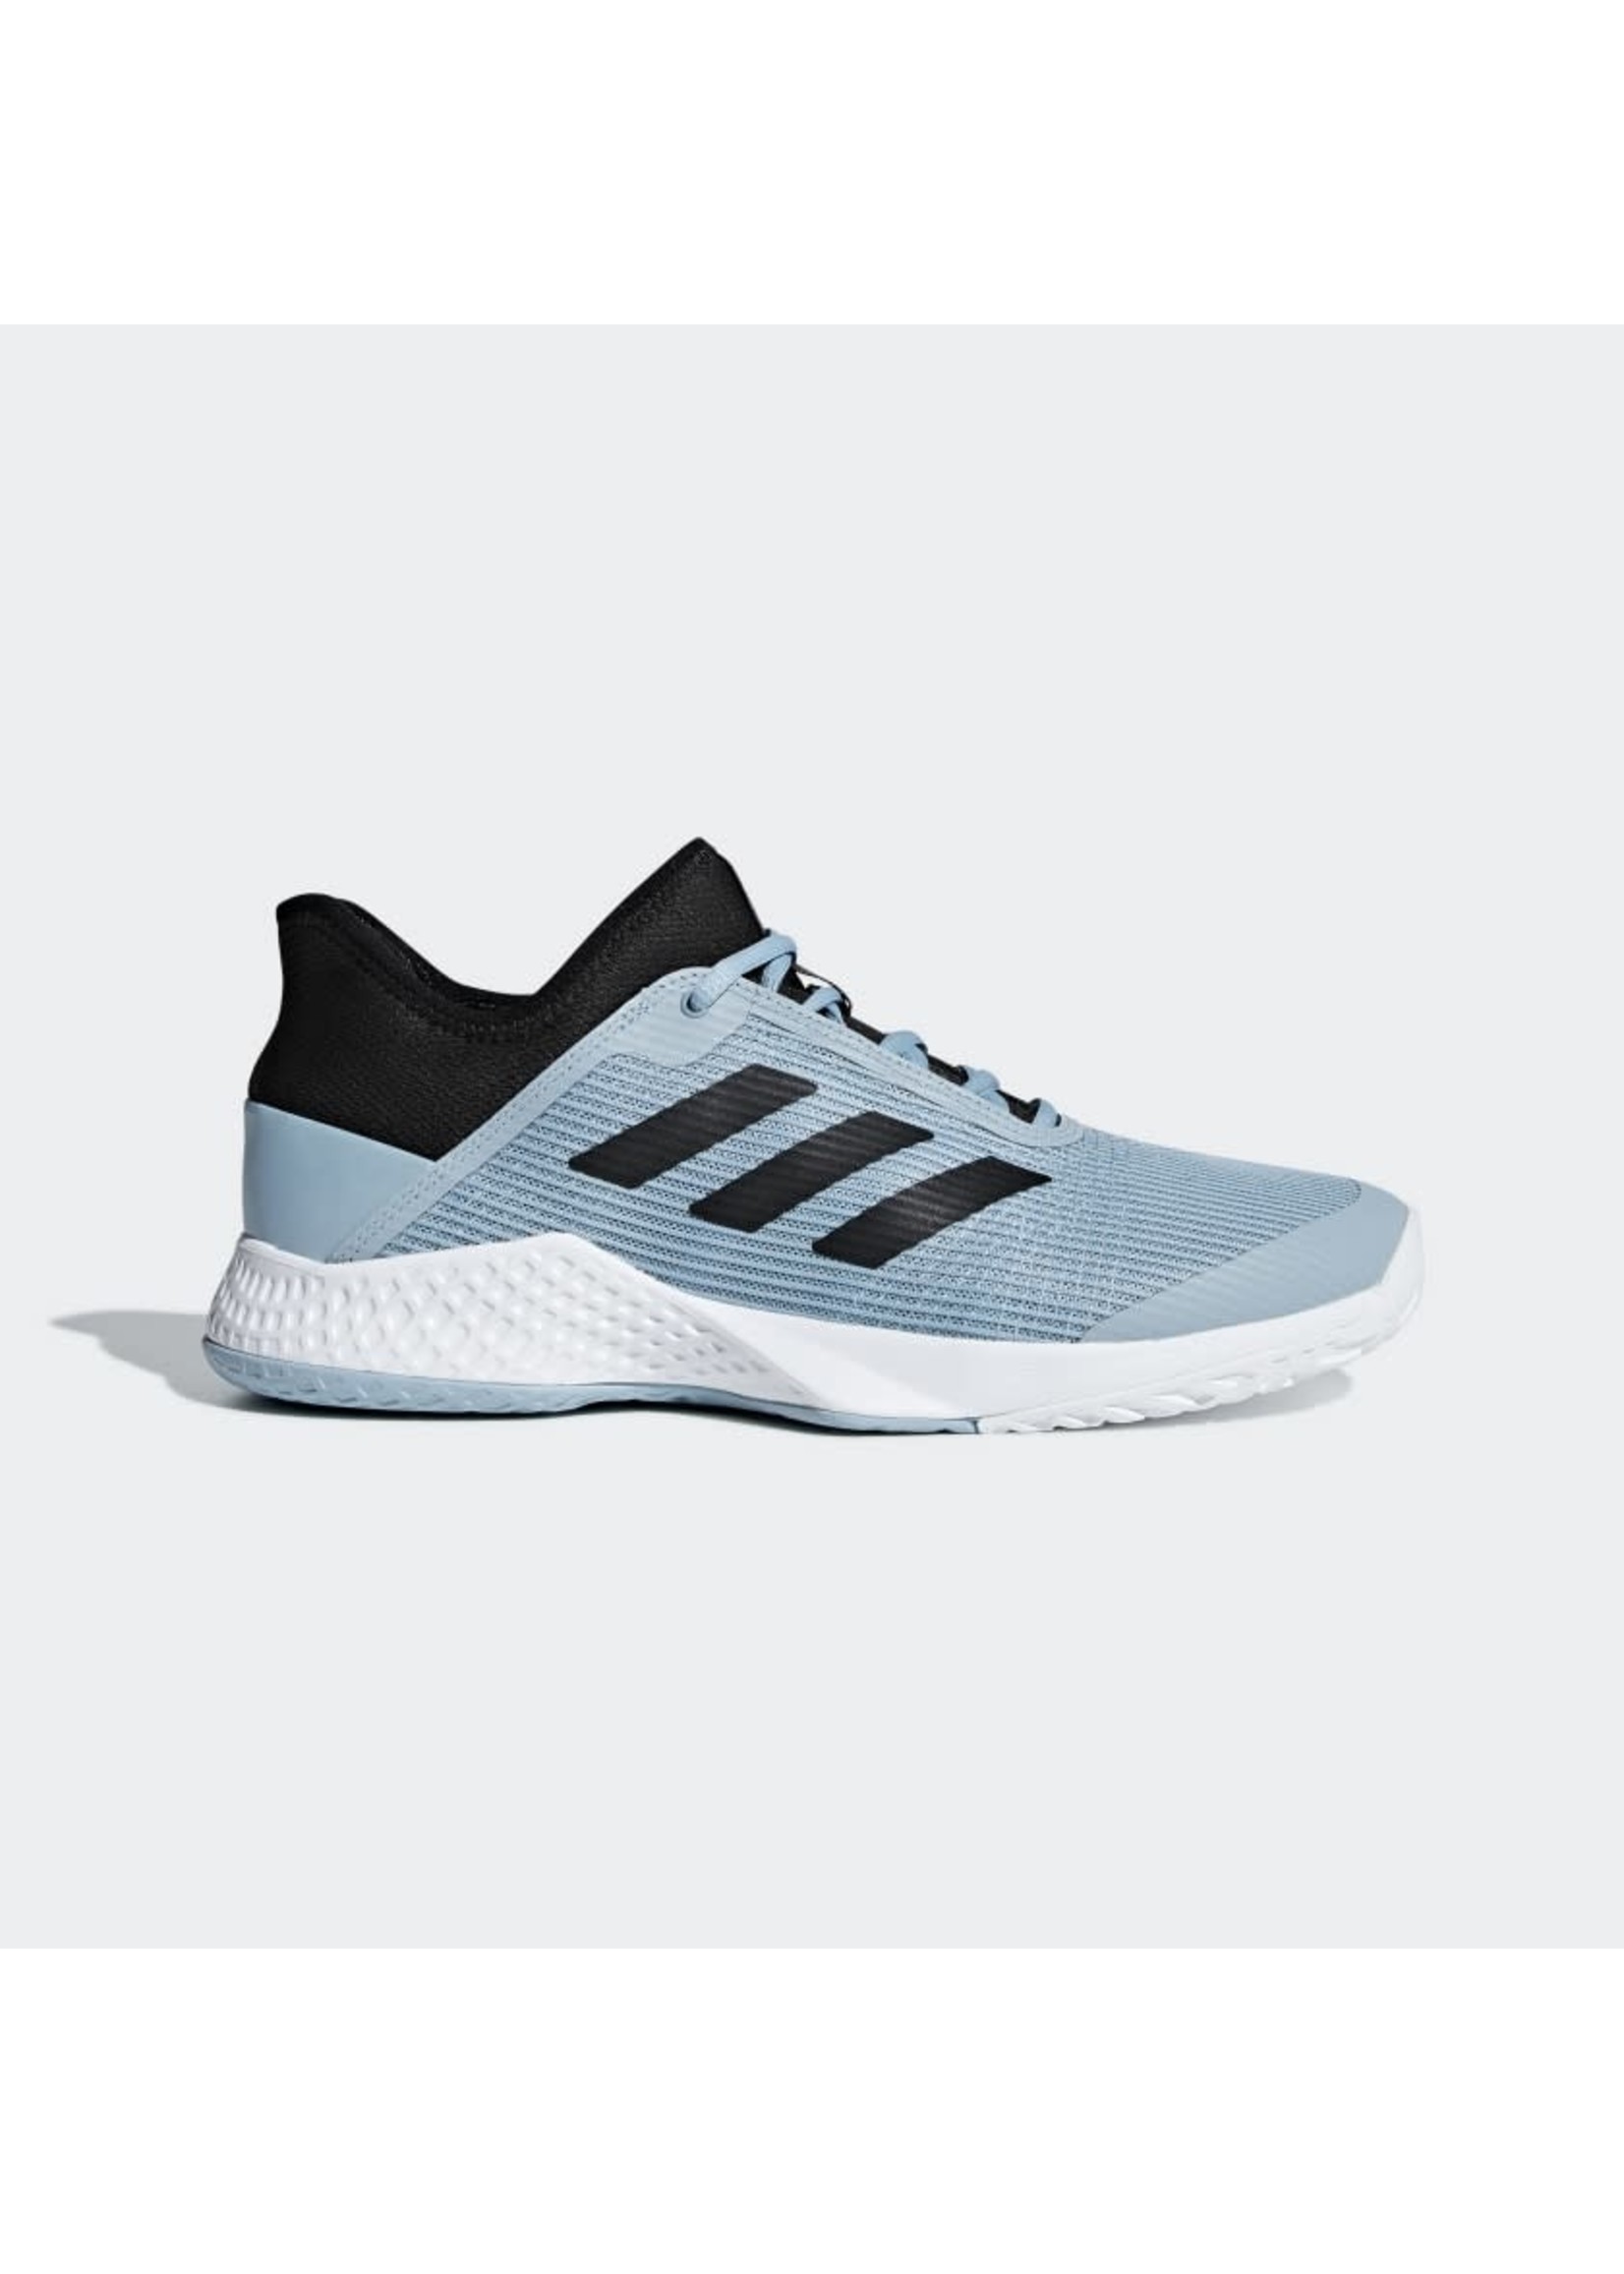 Adidas Adidas Adizero Club Mens Tennis Shoes - Ash Grey/Black 7